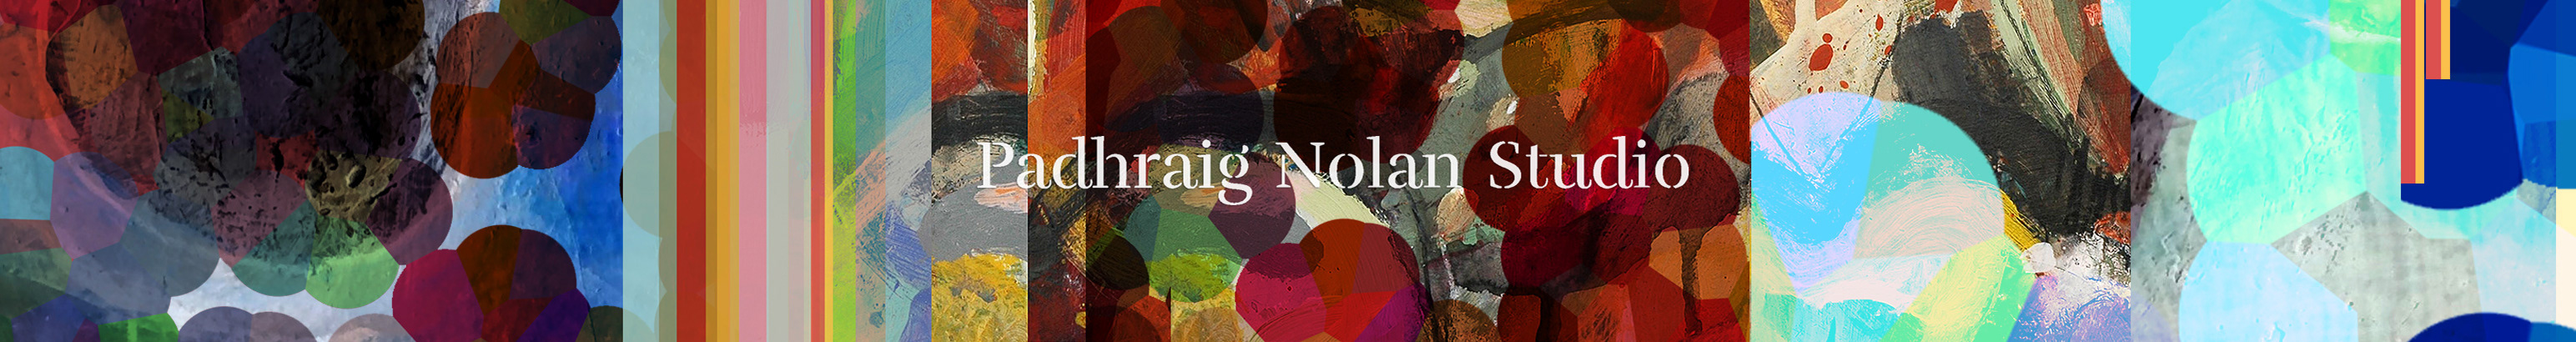 Padhraig Nolan's profile banner